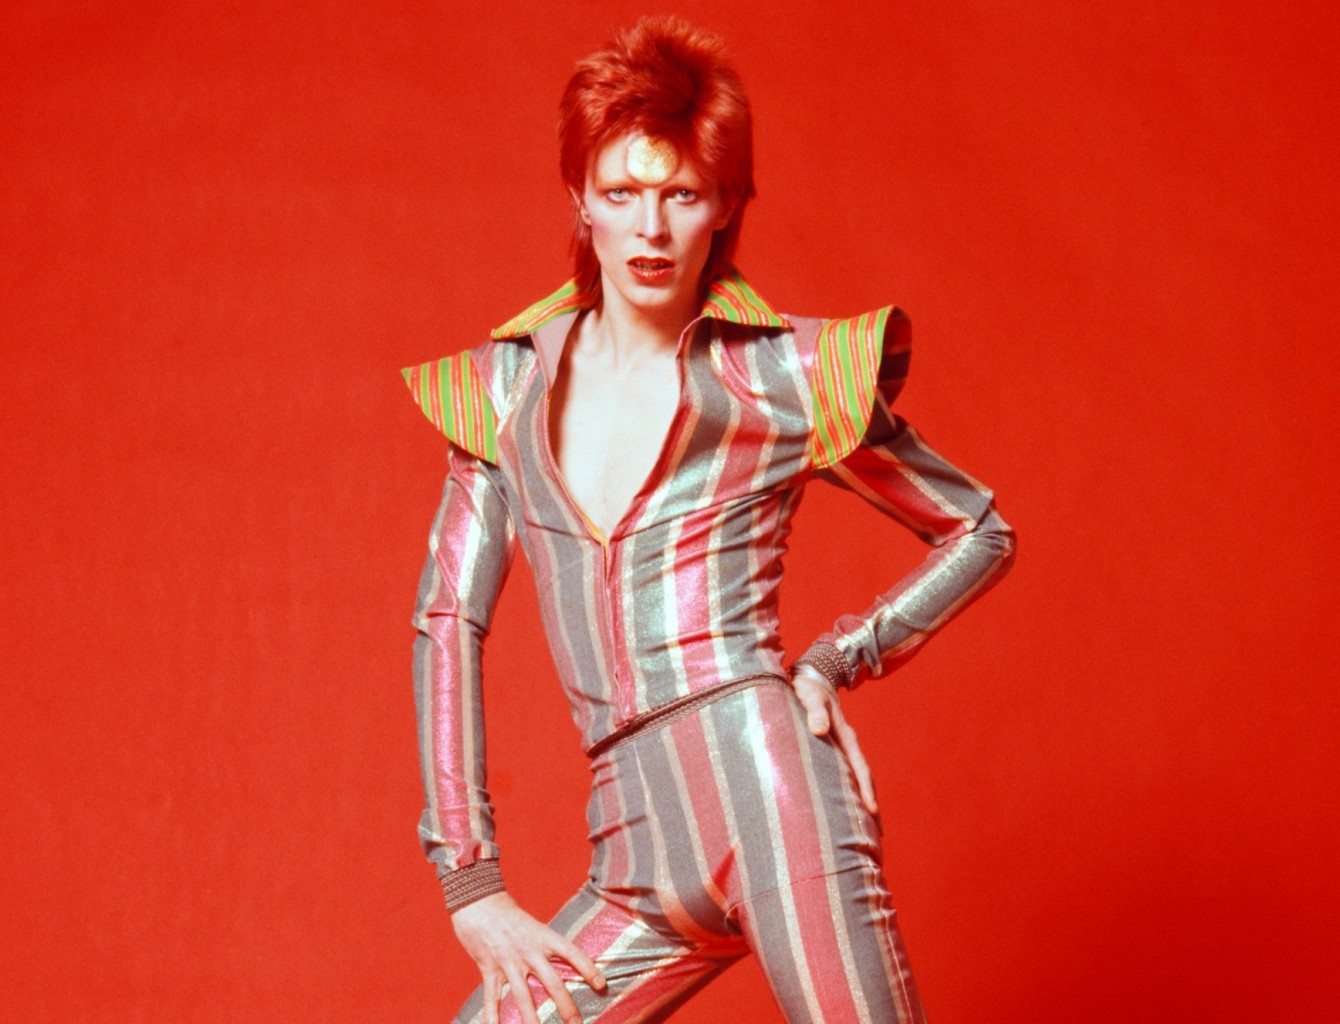 David Bowie - Ziggy Stardust.